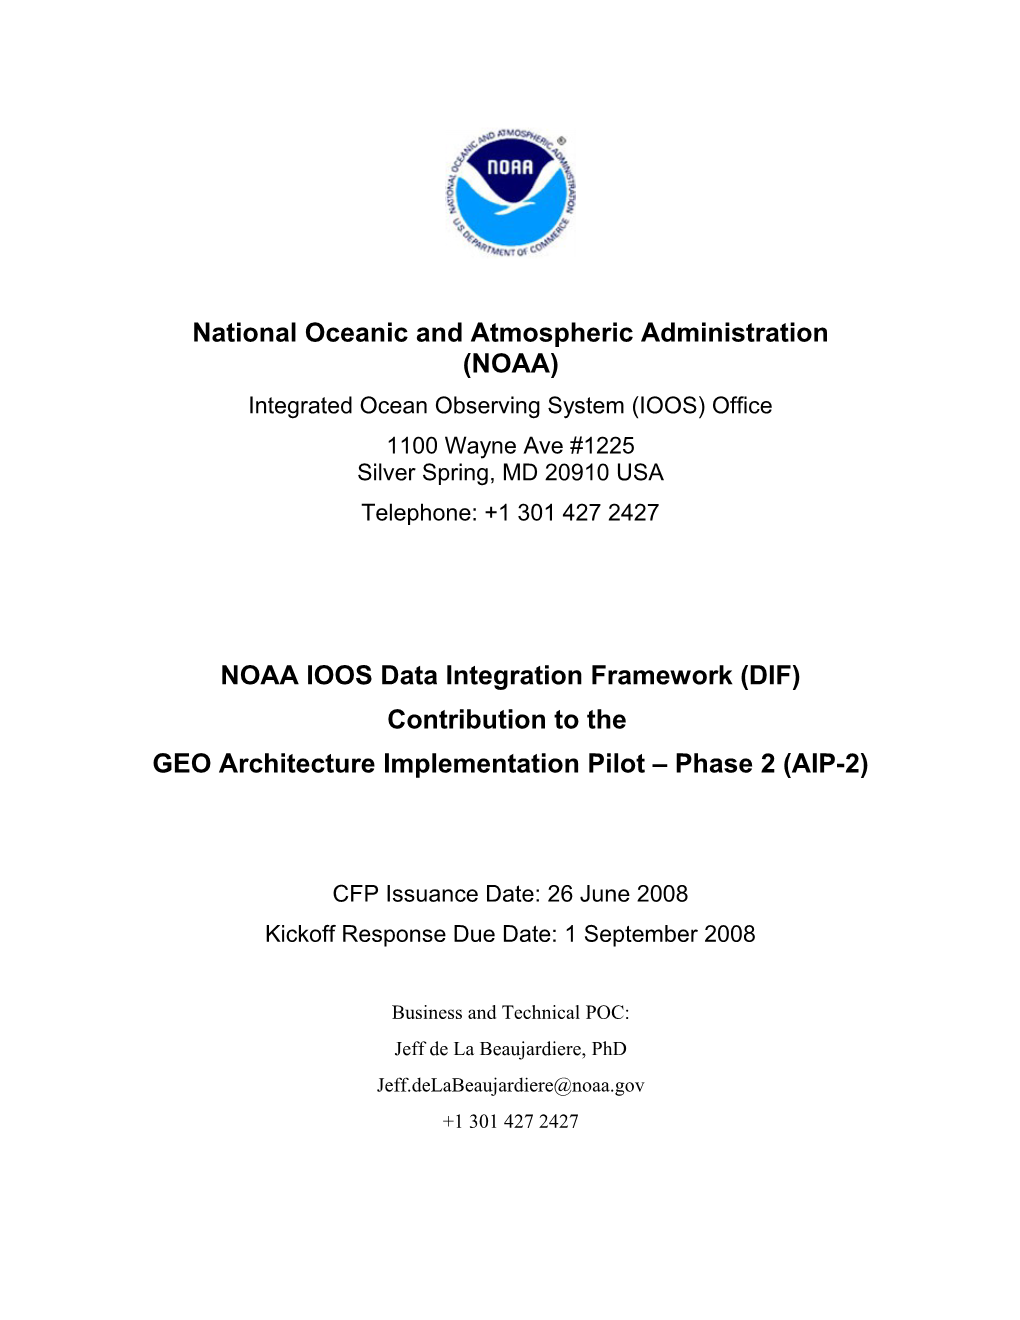 NOAA IOOS Response to GEOSS AIP 2 RFP